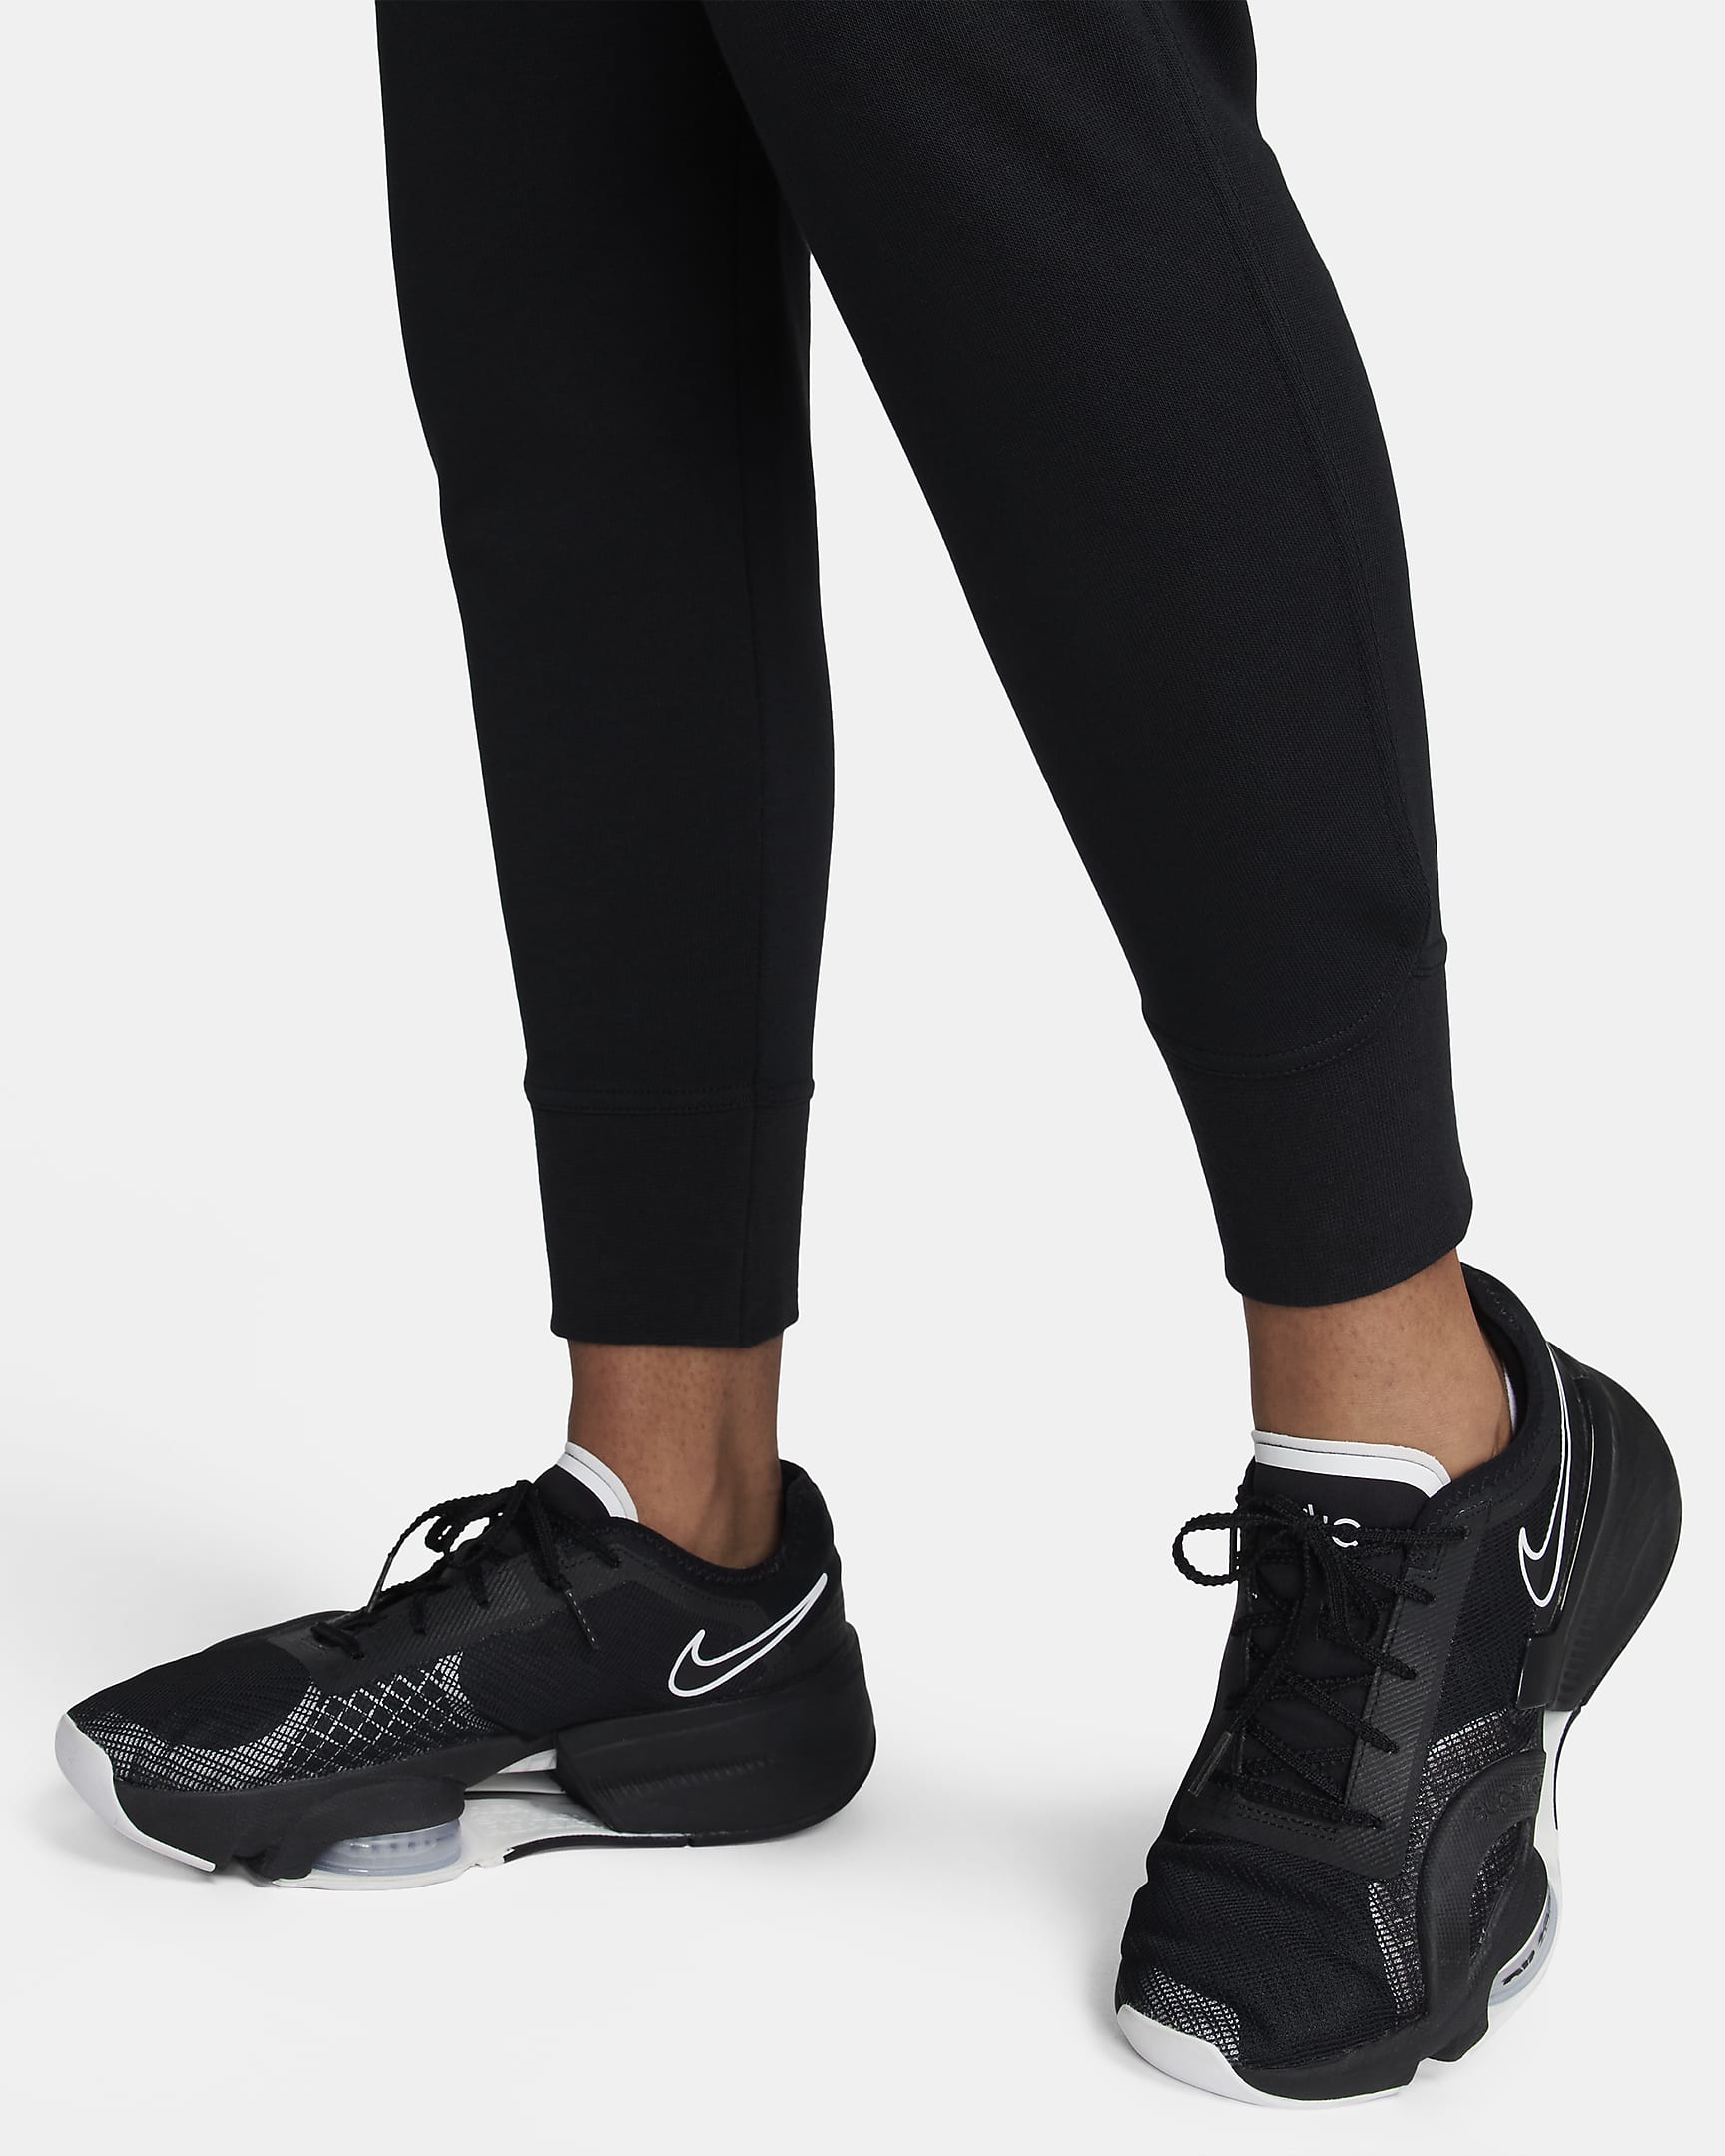 Pants de entrenamiento para mujer Nike Dri-FIT Get Fit. Nike.com